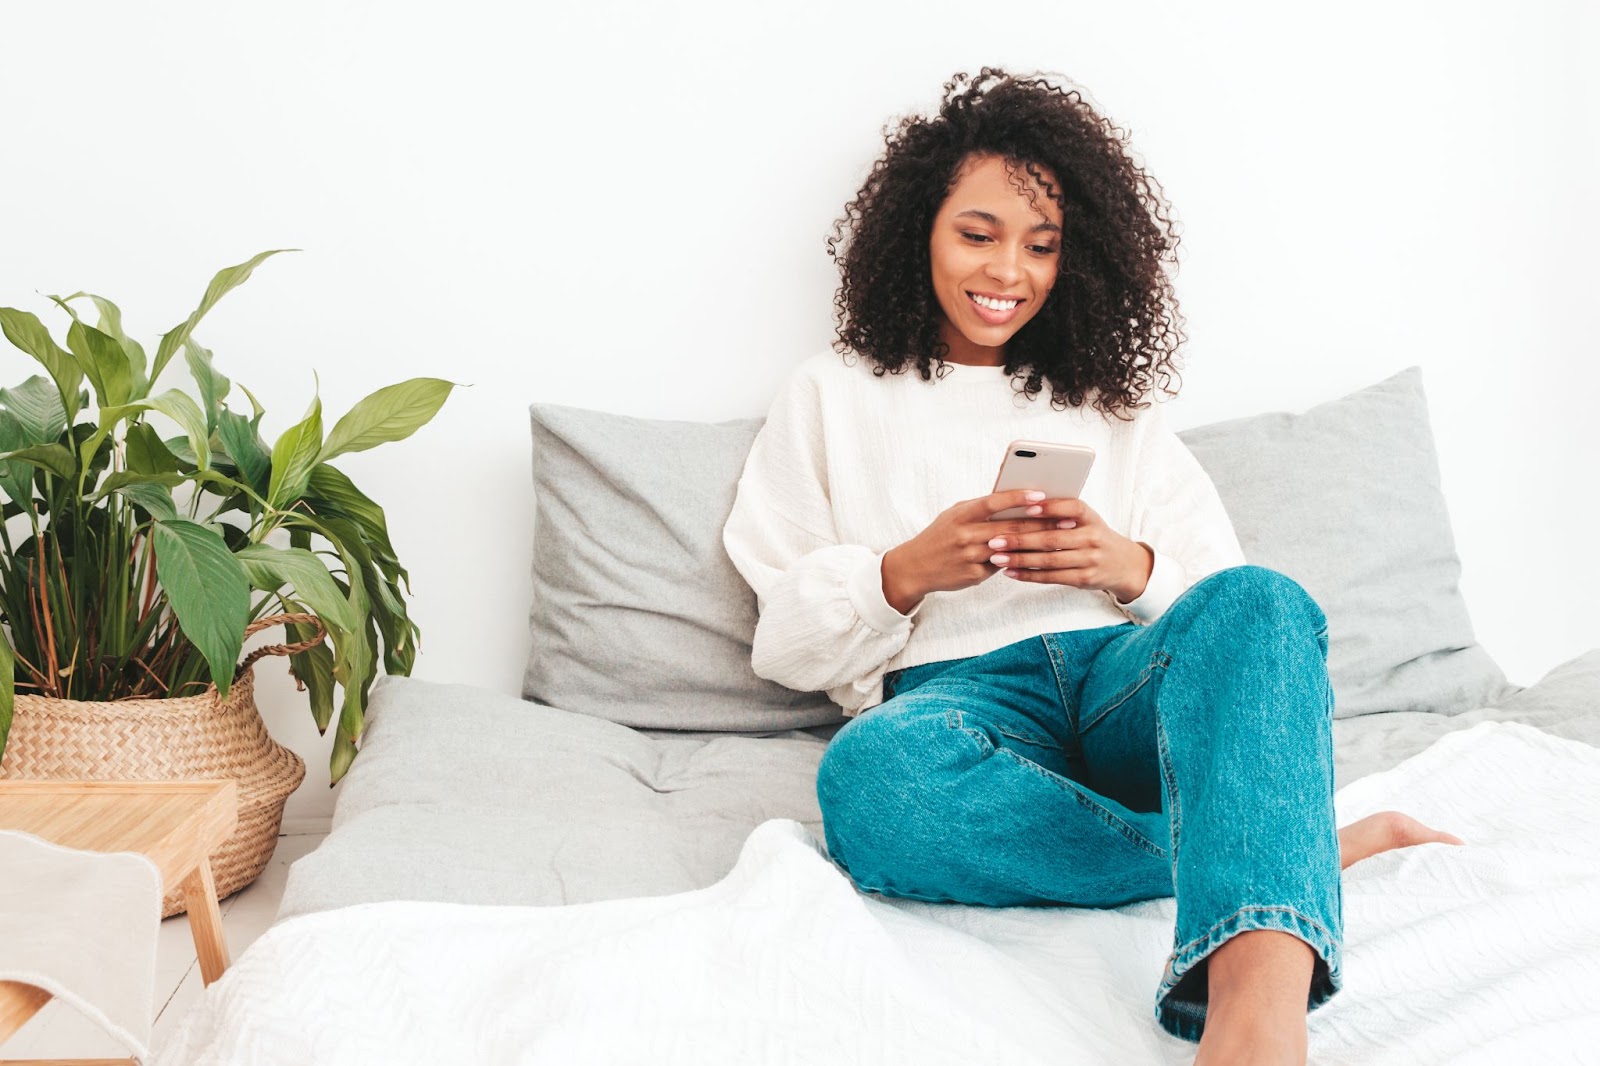 Uma mulher de blusa branca e calça jeans está sentada na cama conferindo o benefício do abono salarial em seu smartfone.